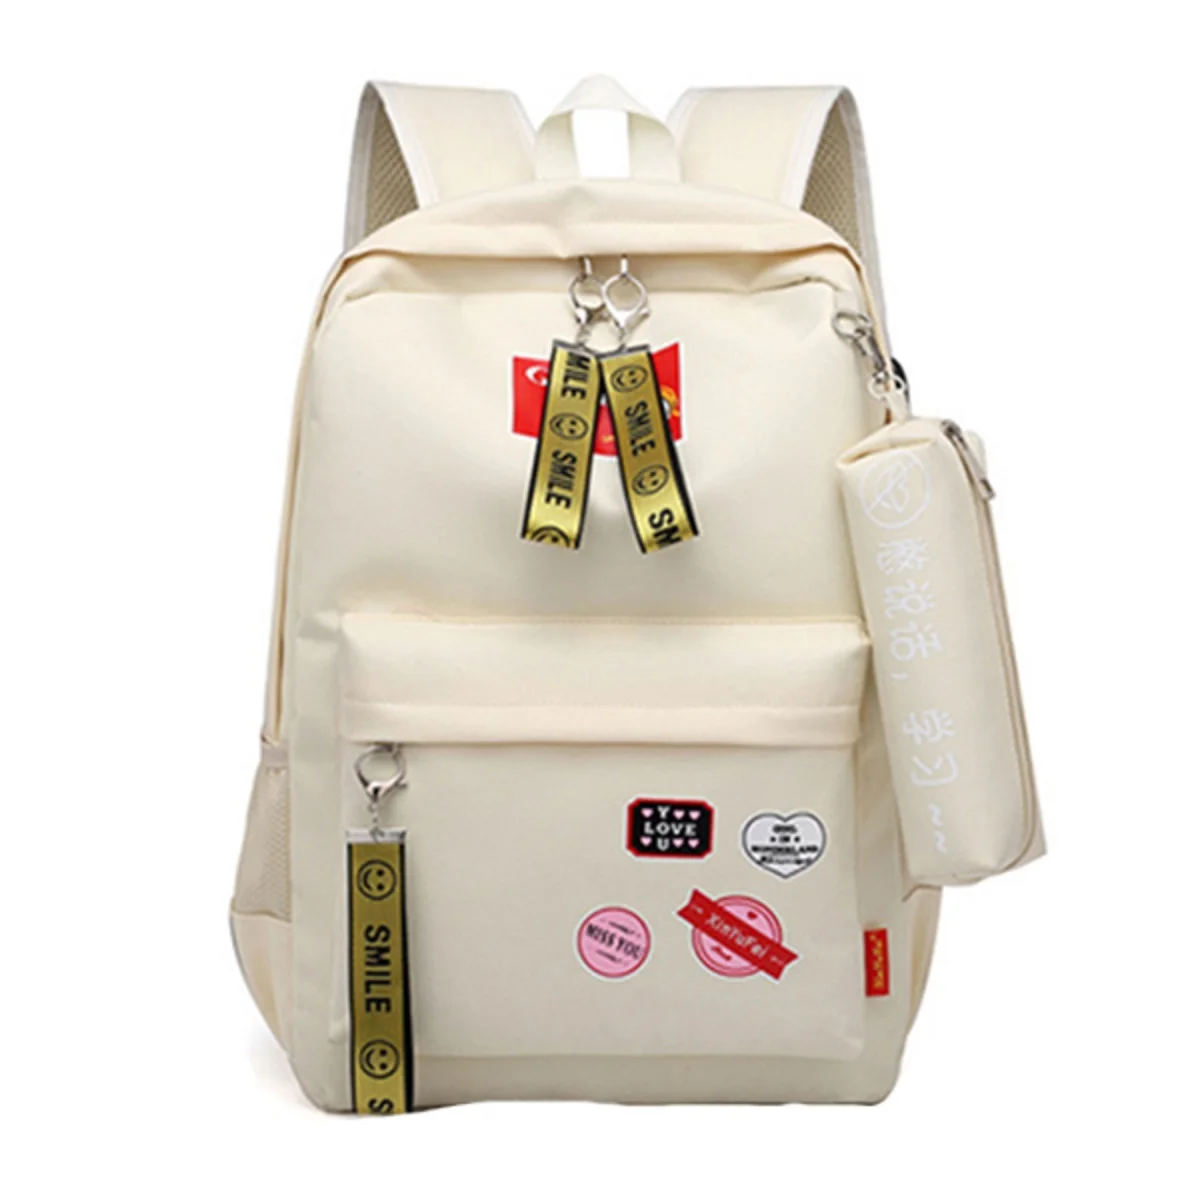 Женский рюкзак usb зарядка Оксфорд рюкзаки тканевые школьные сумки для подростков девочек дорожный Рюкзак Школьные сумки с пенал Чехол - Цвет: Beige